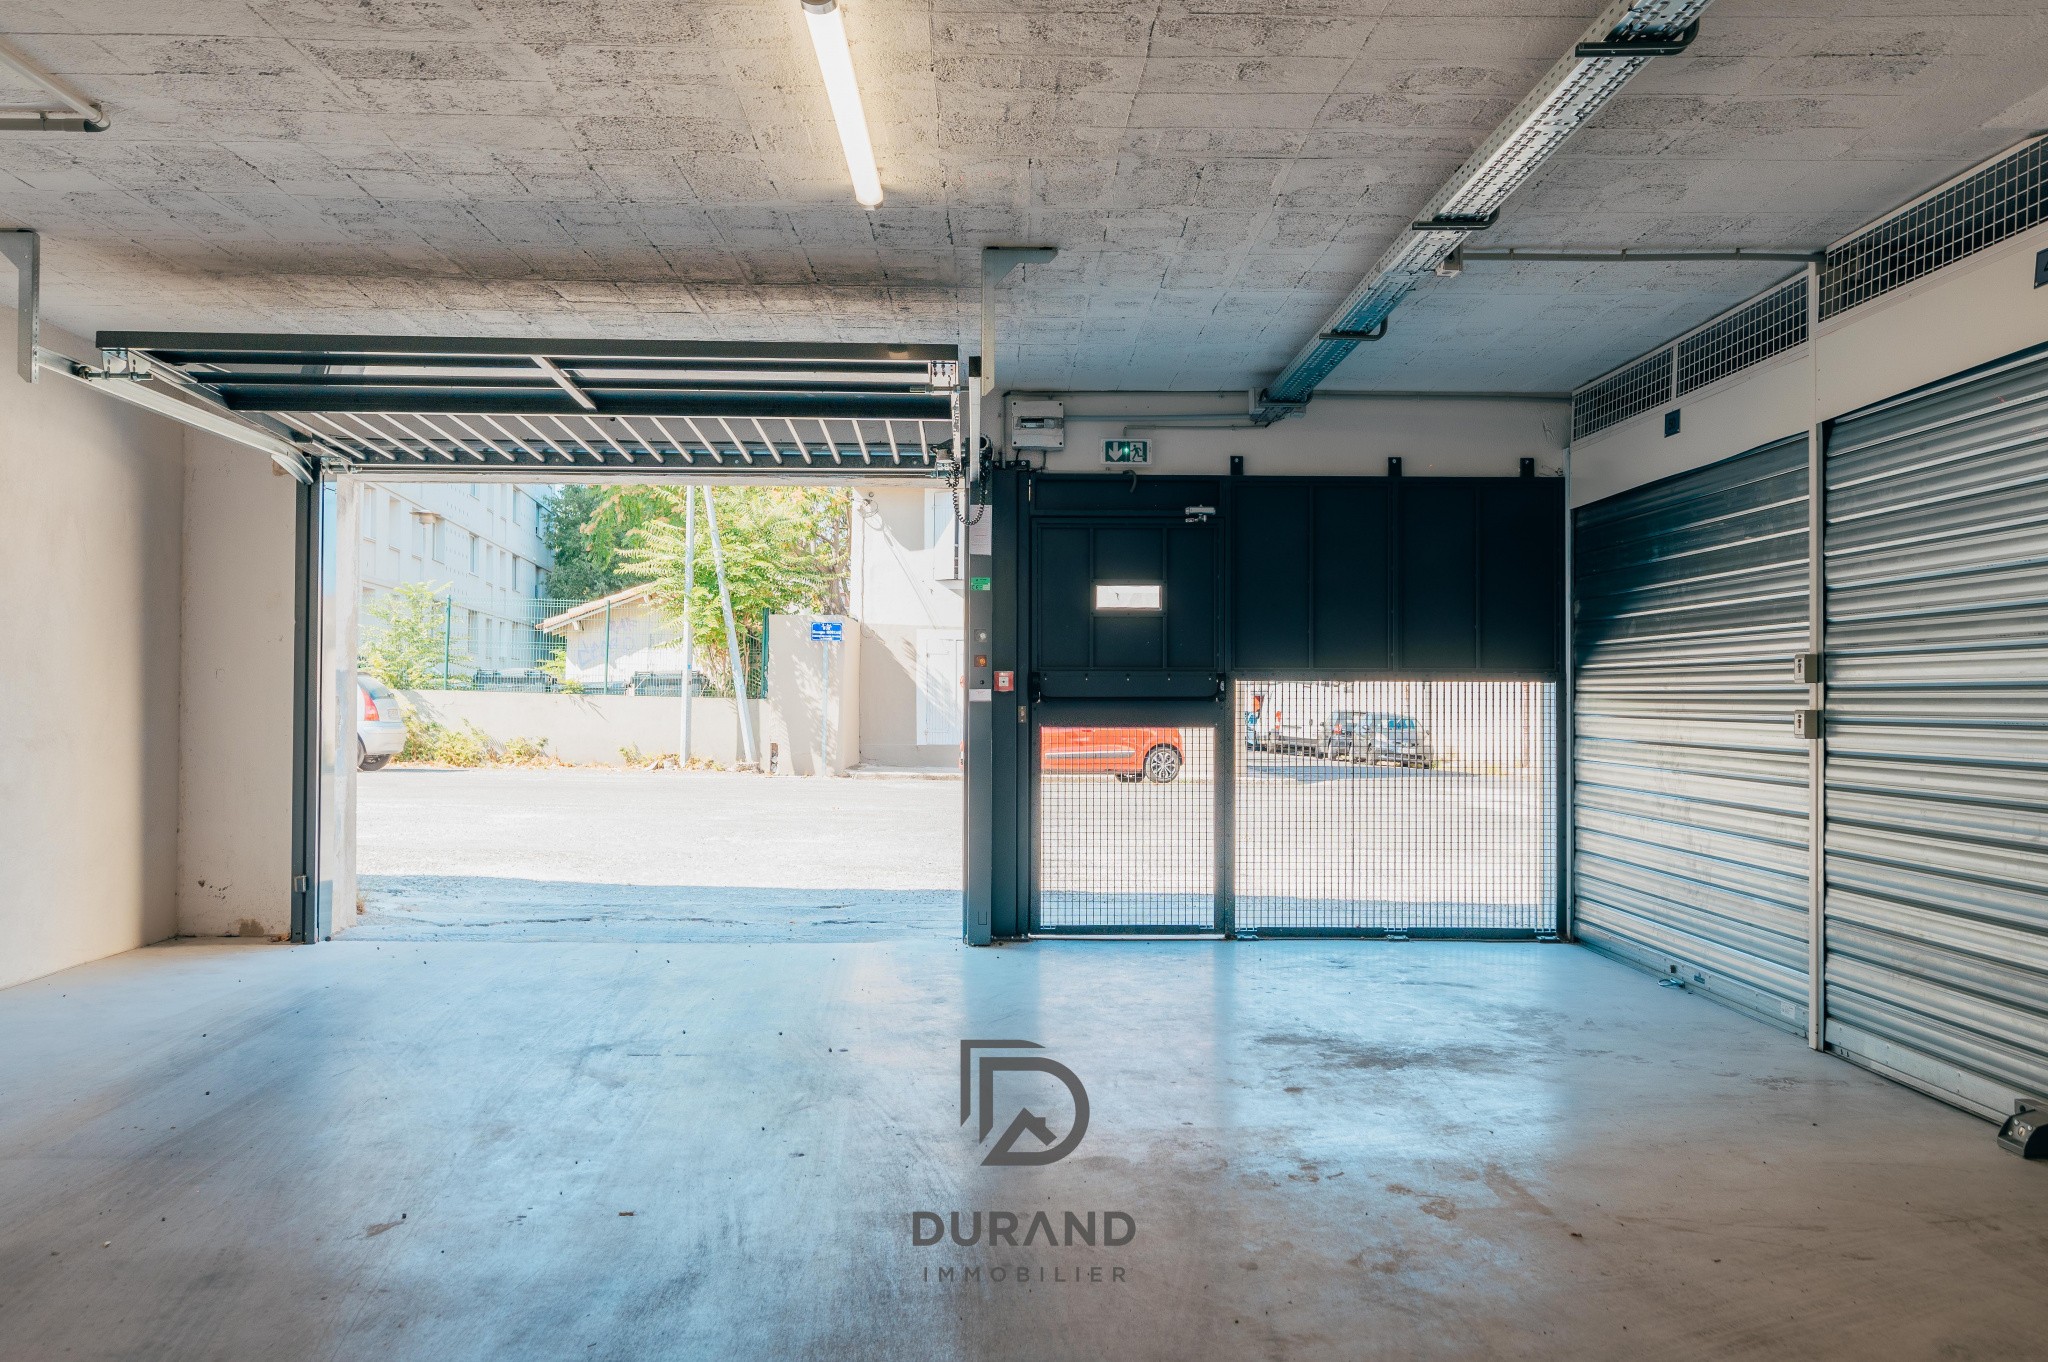 Vente Garage / Parking à Marseille 8e arrondissement 0 pièce